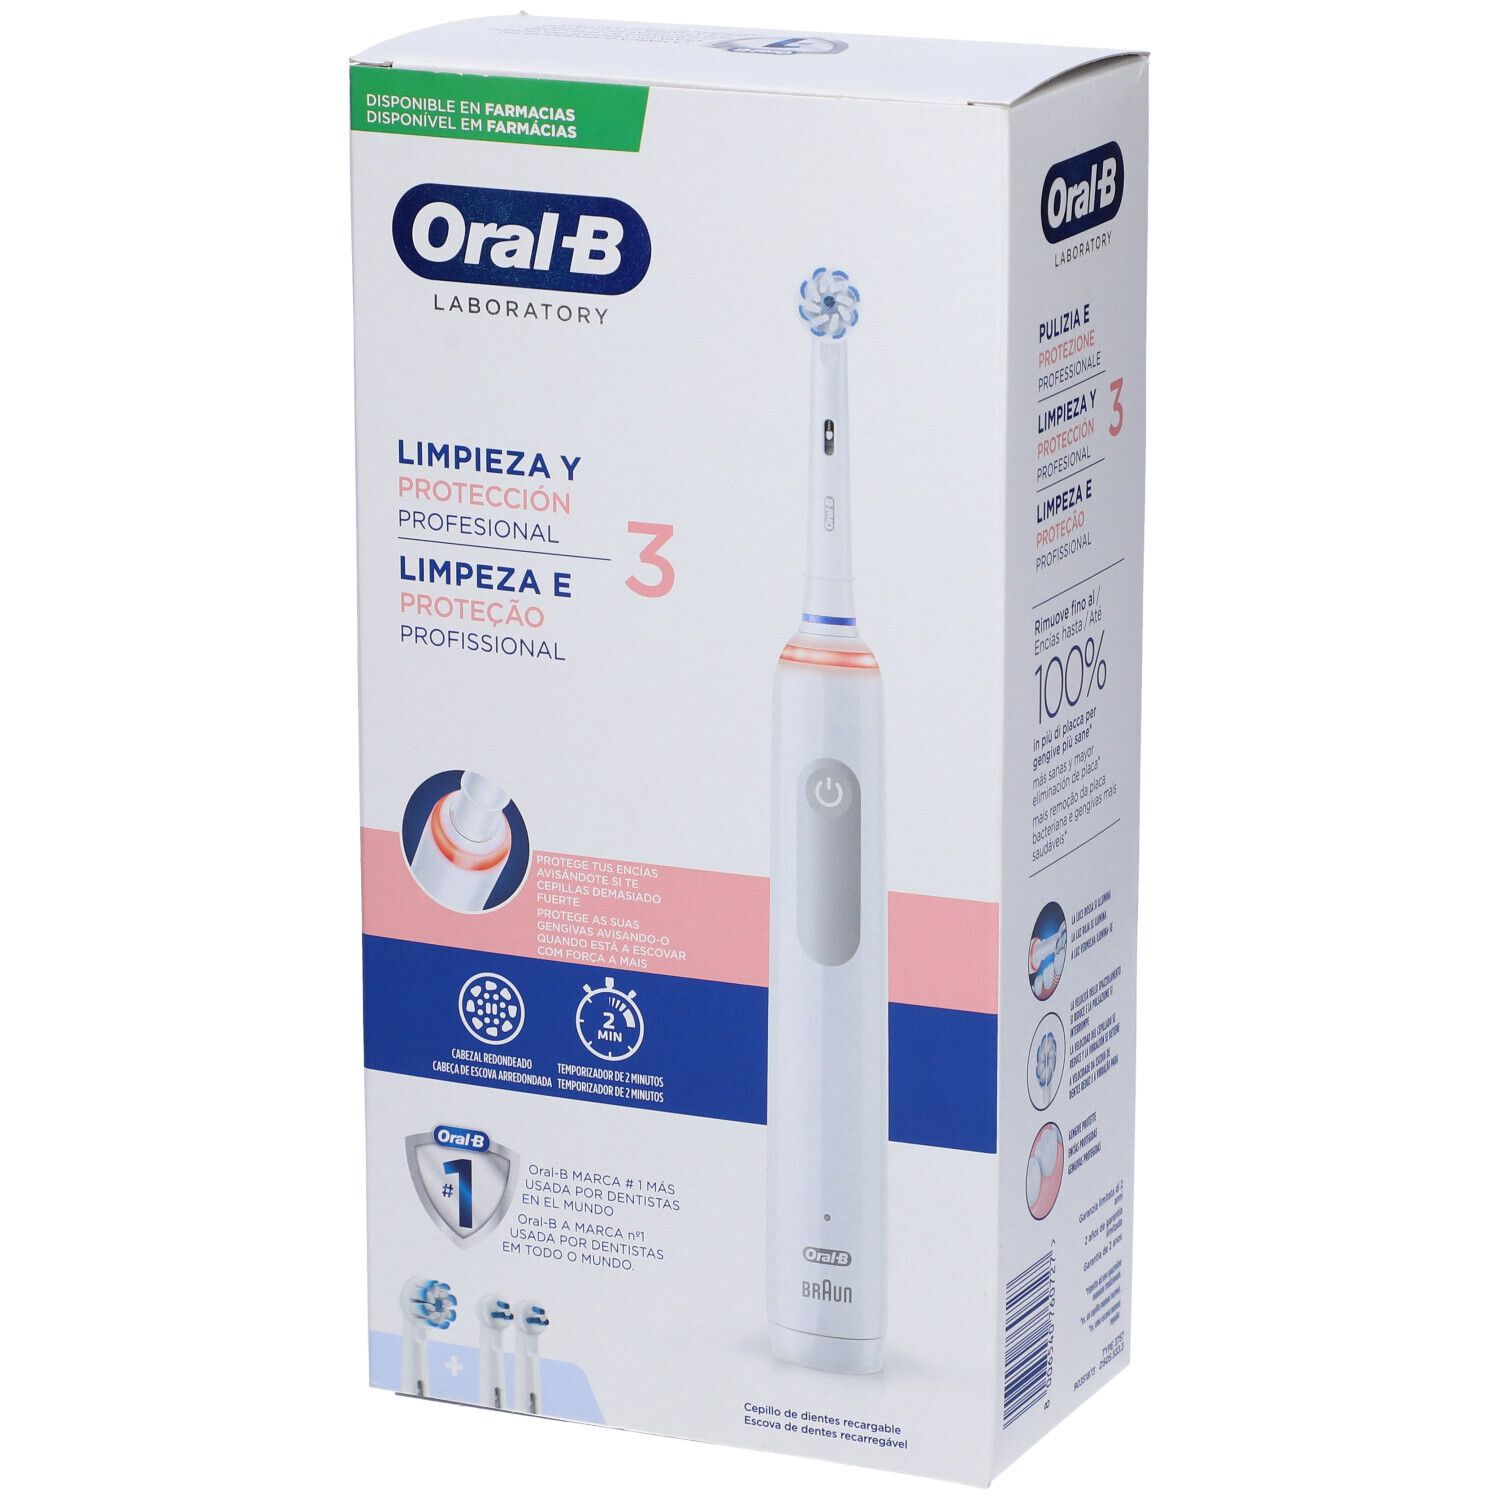 Image of Oral-b Pro 3 Laboratory Spazzolino Elettrico + 2 Refill